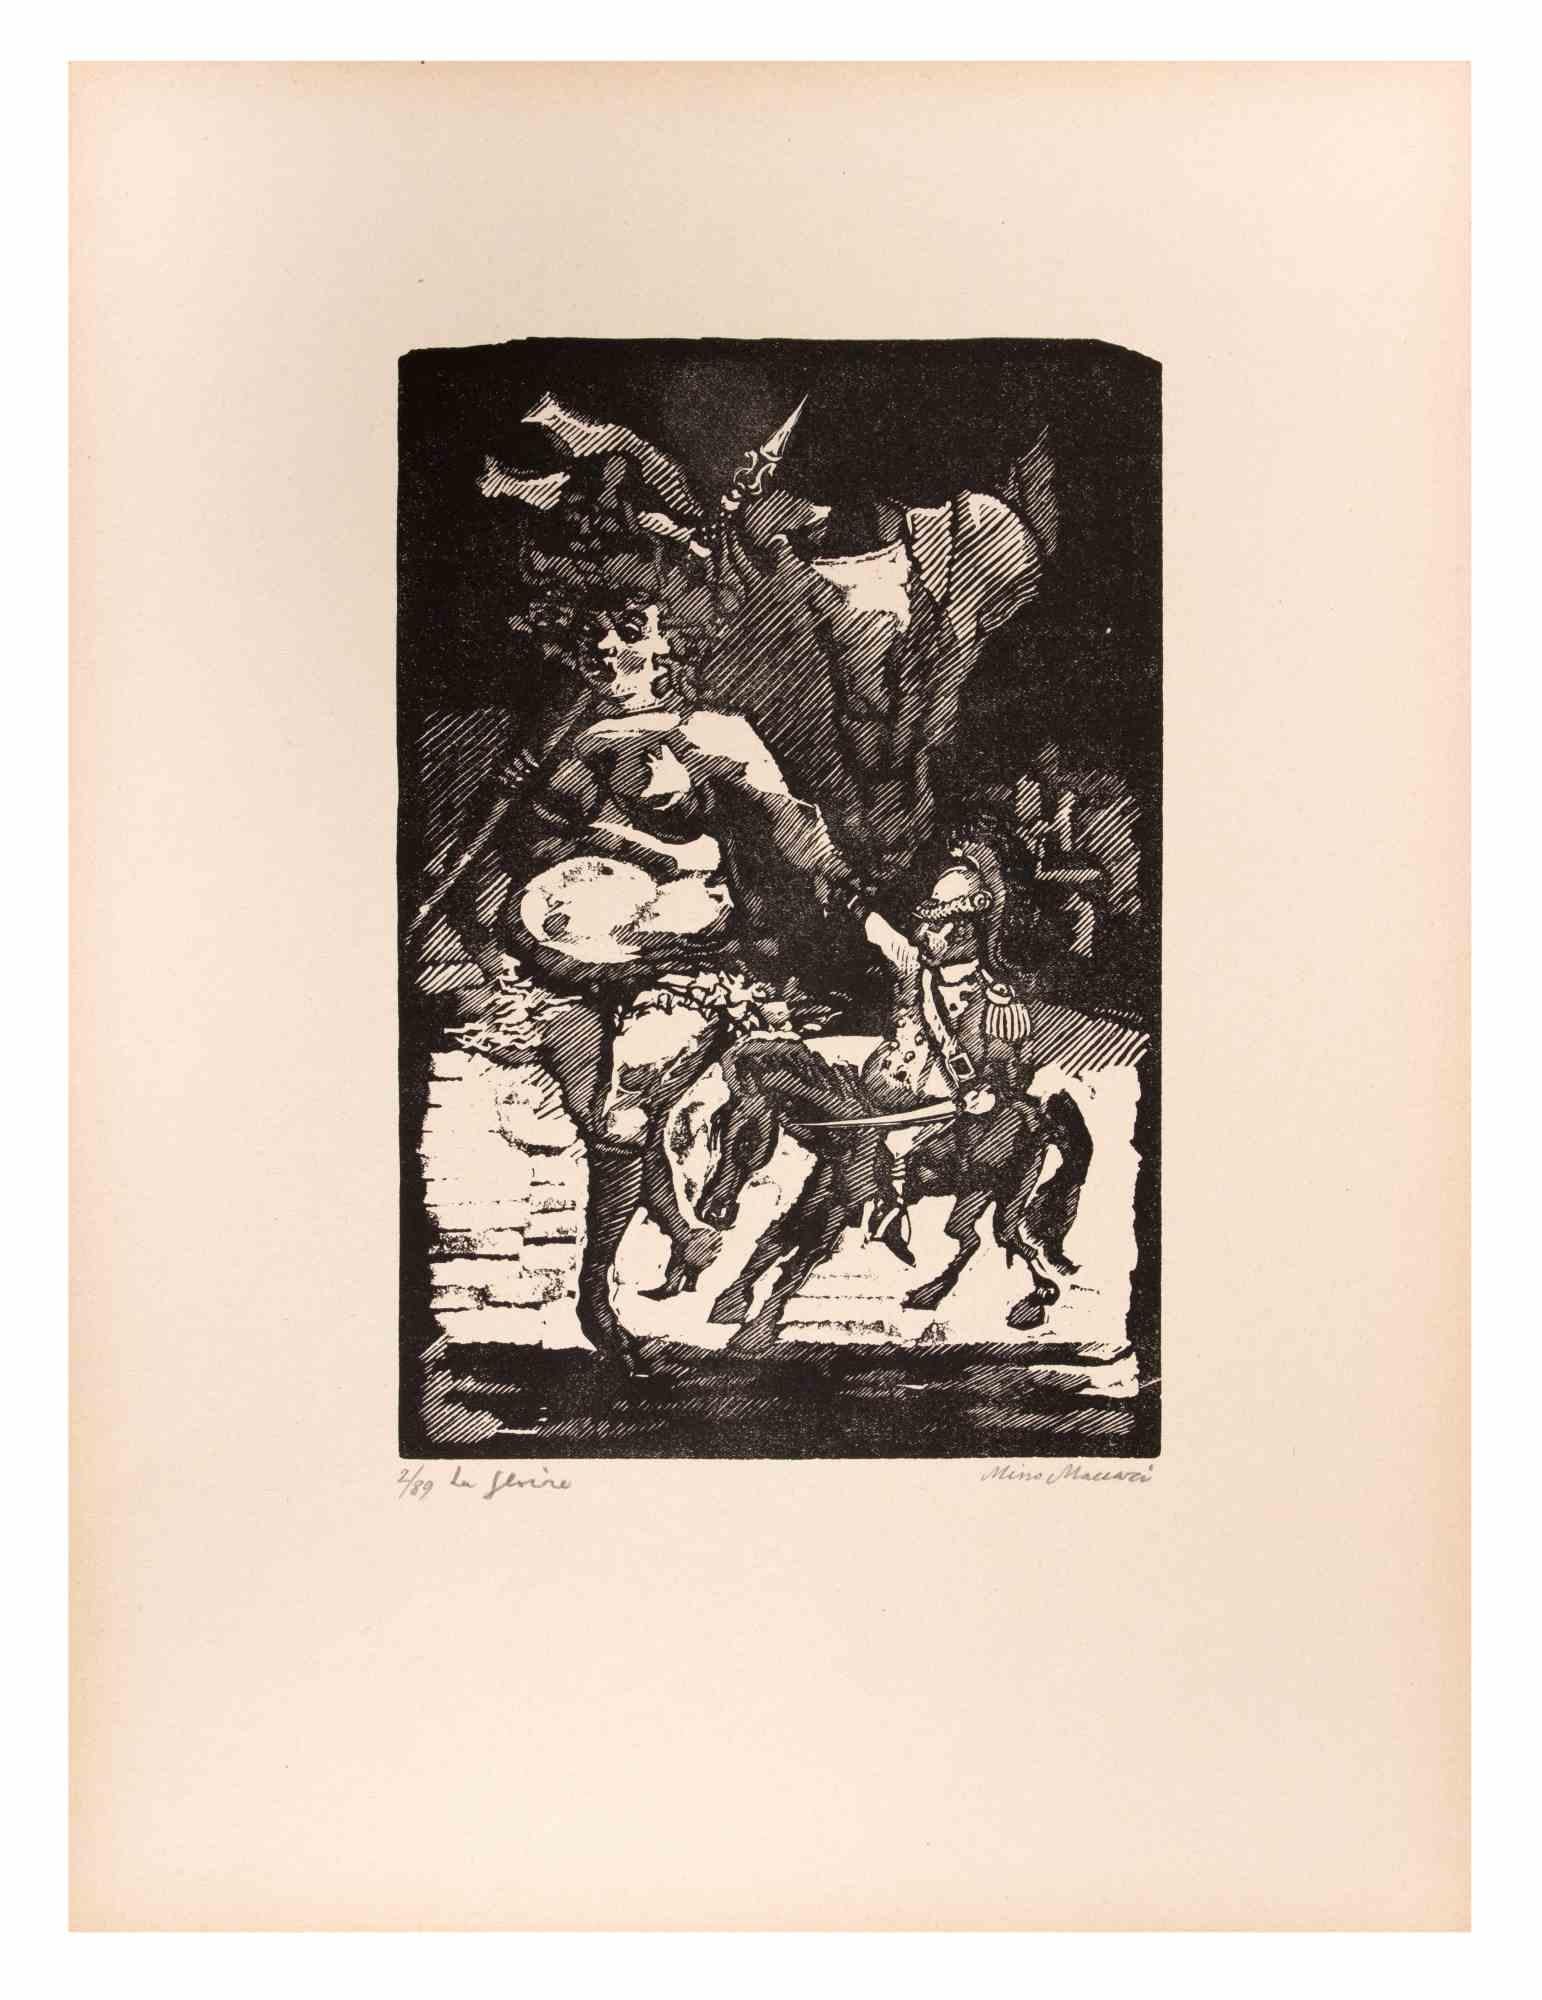 La Famed est une œuvre d'art réalisée par Mino Maccari (1924-1989) au milieu du 20e siècle.

B./W. Gravure sur bois sur papier. Signé à la main dans la partie inférieure, numéroté 2/89 exemplaires et titré dans la marge gauche.

Bonnes